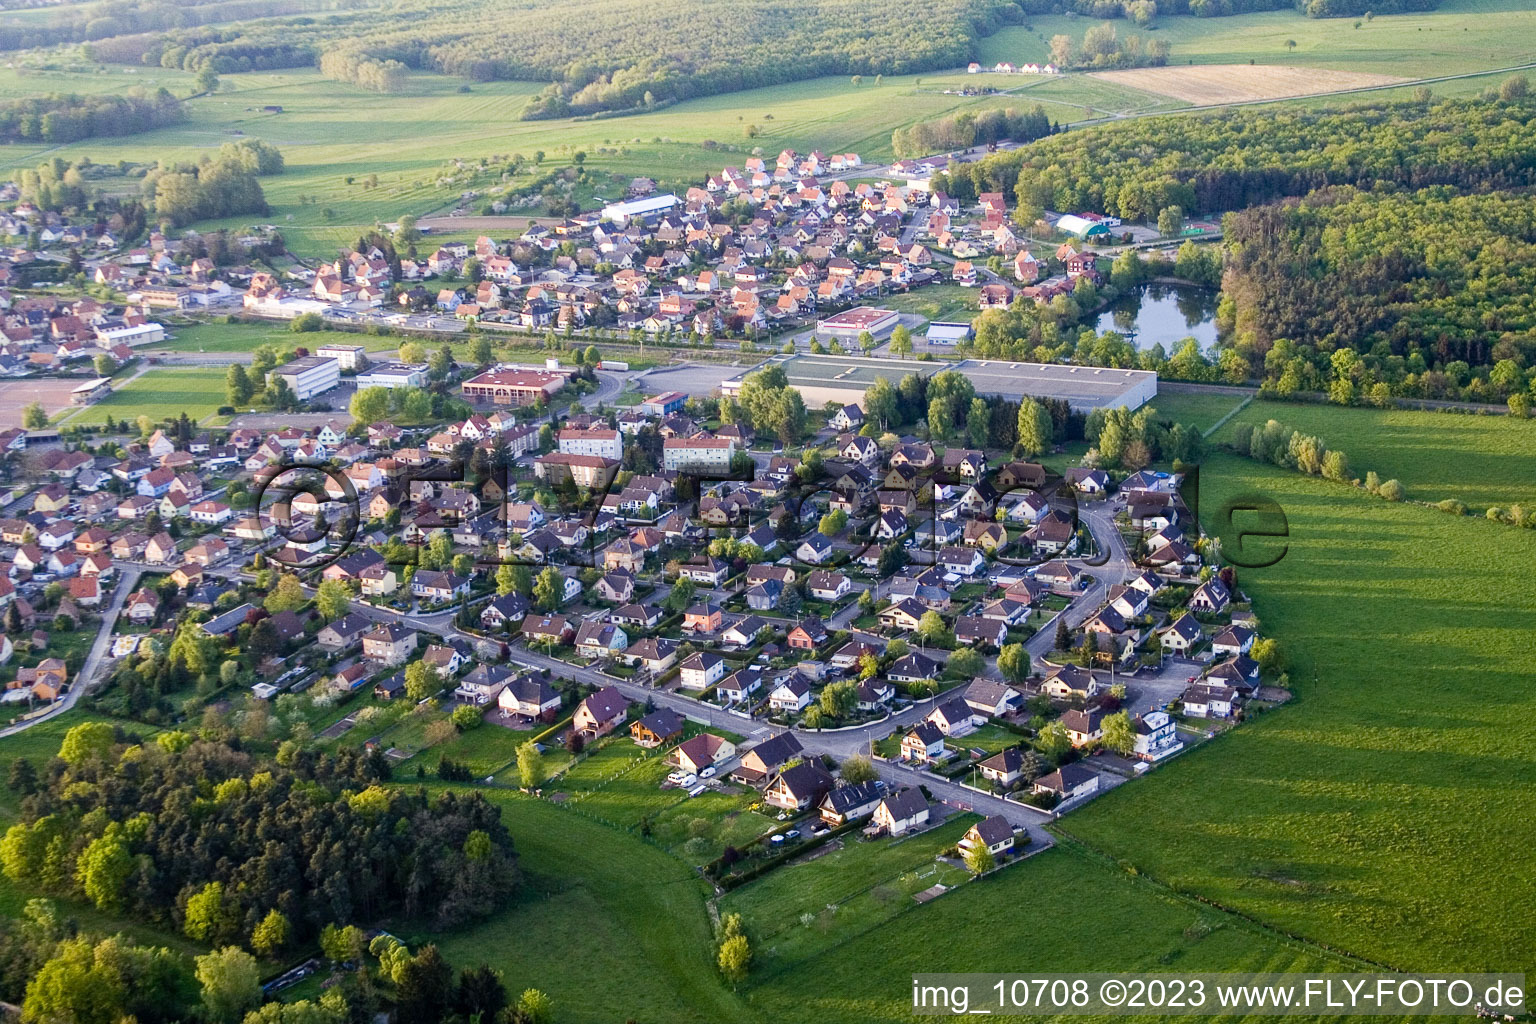 Mertzwiller im Bundesland Bas-Rhin, Frankreich von der Drohne aus gesehen